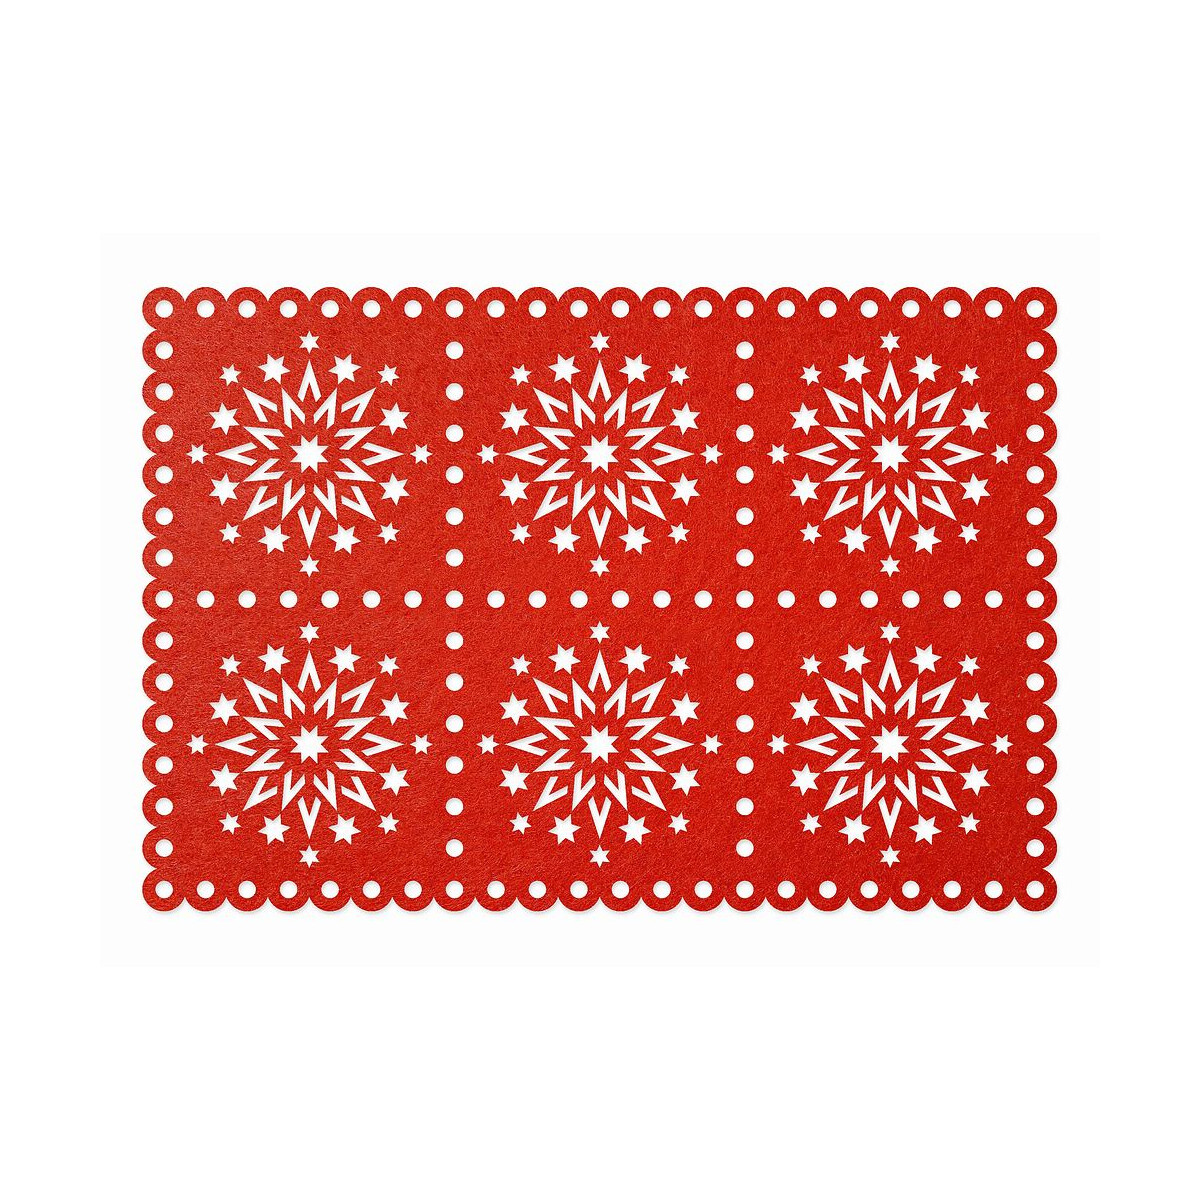 FILZ Untersetzer Weihnachten Stern 45 x 30 cm - rot